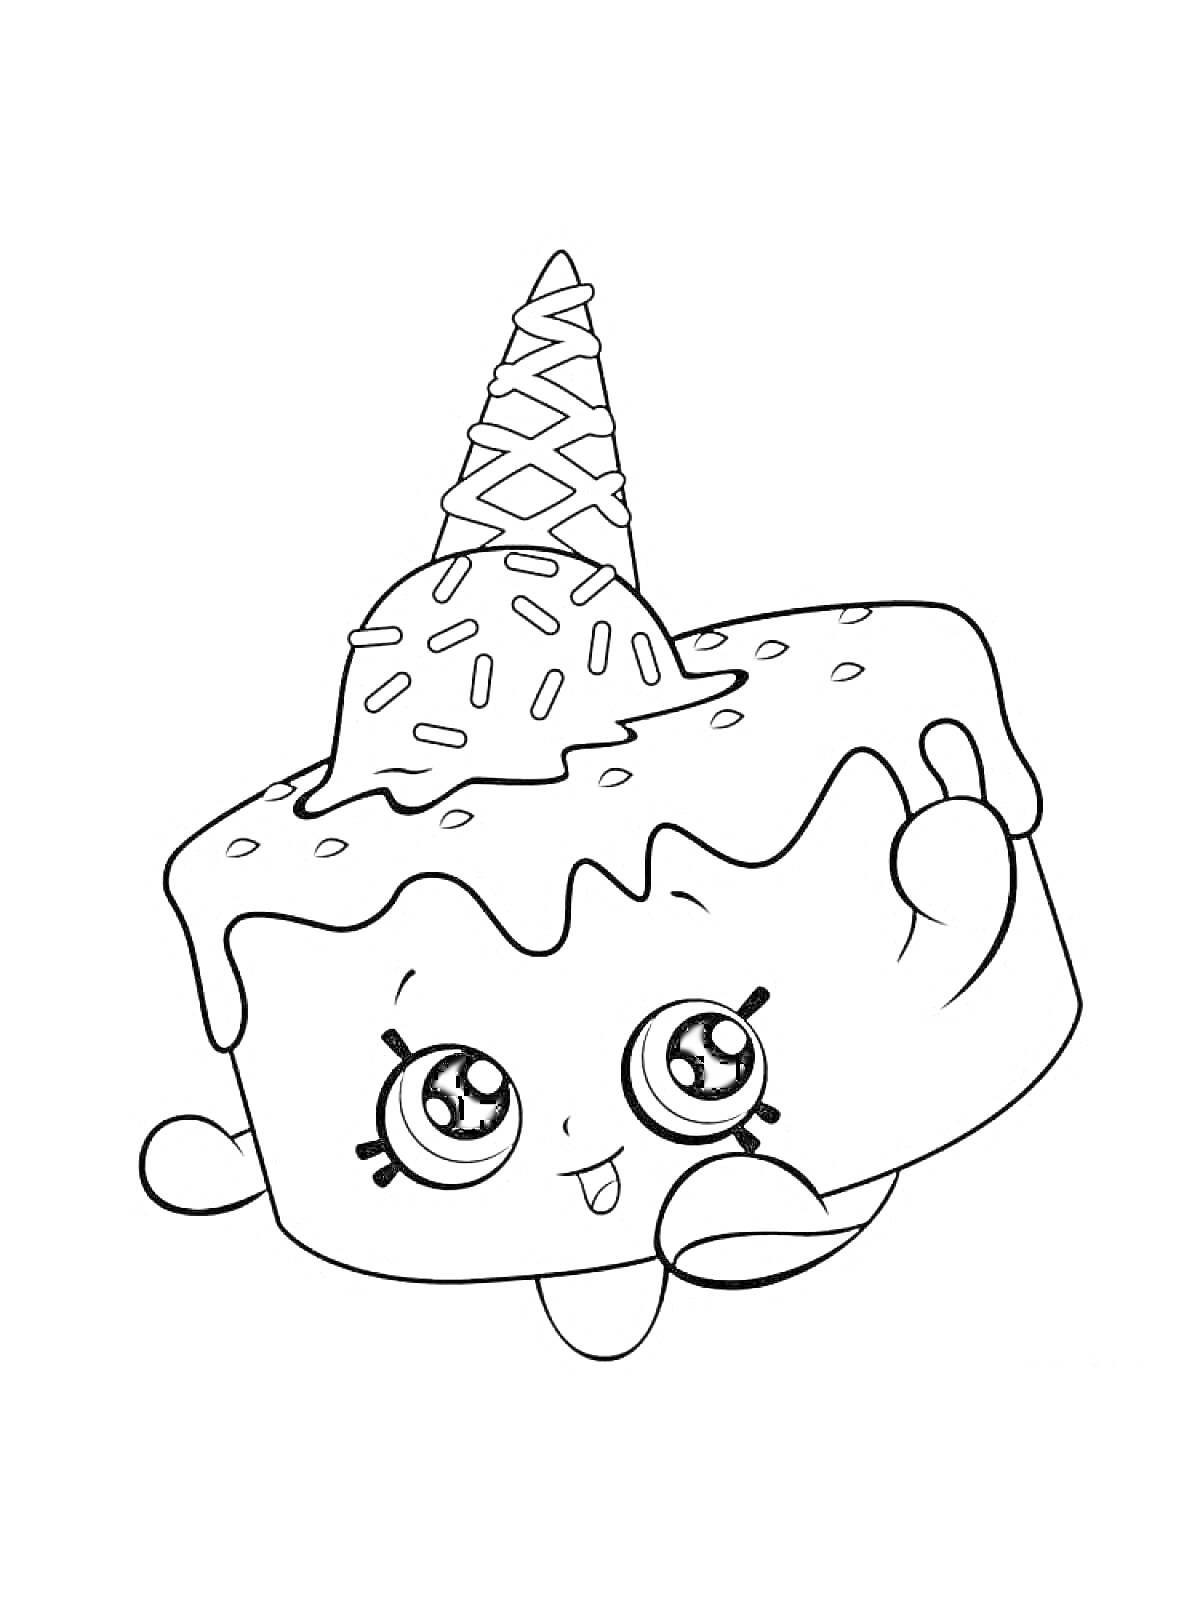 Раскраска Сквиши торт с рожком мороженого и лицом